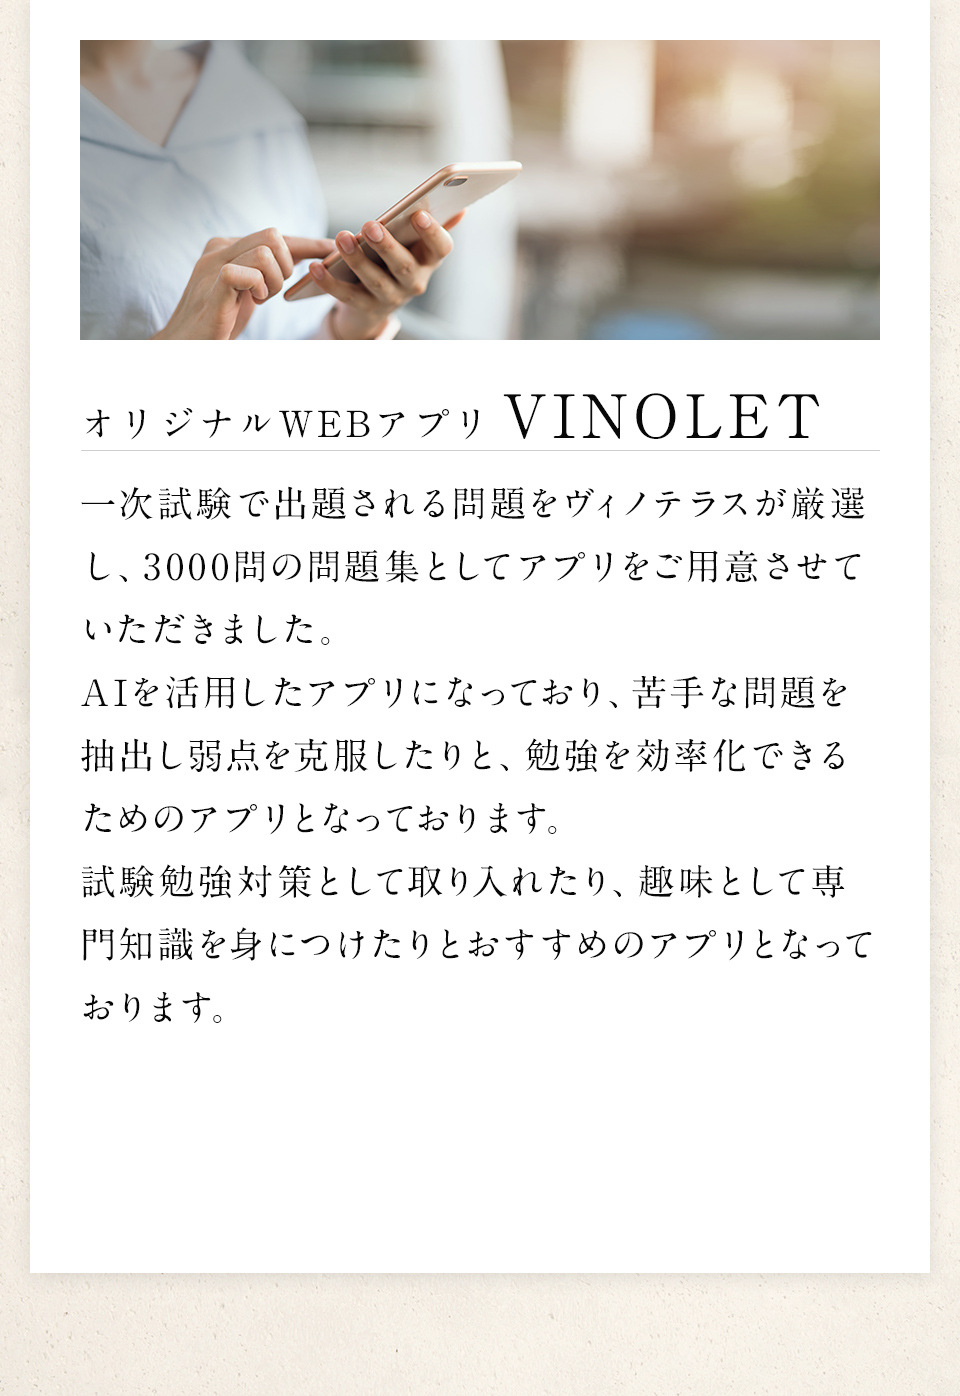 オリジナルwebアプリVinolet